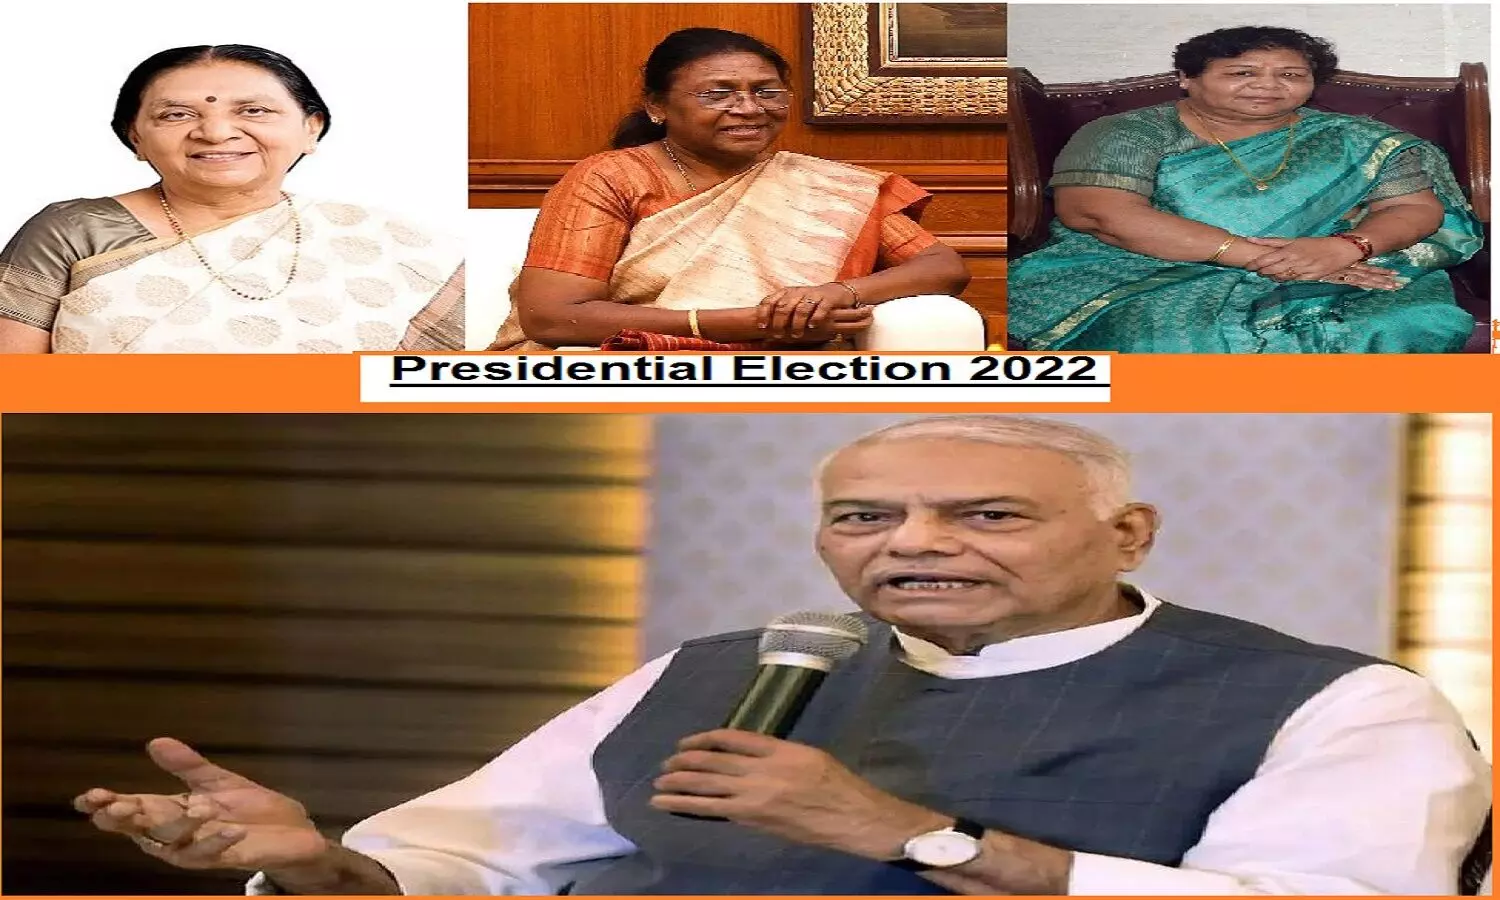 राष्ट्रपति चुनाव 2022 : बीजेपी का राष्ट्रपति उम्मीदवार कौन है, विपक्ष ने किसे अपना कैंडिडेट चुना?